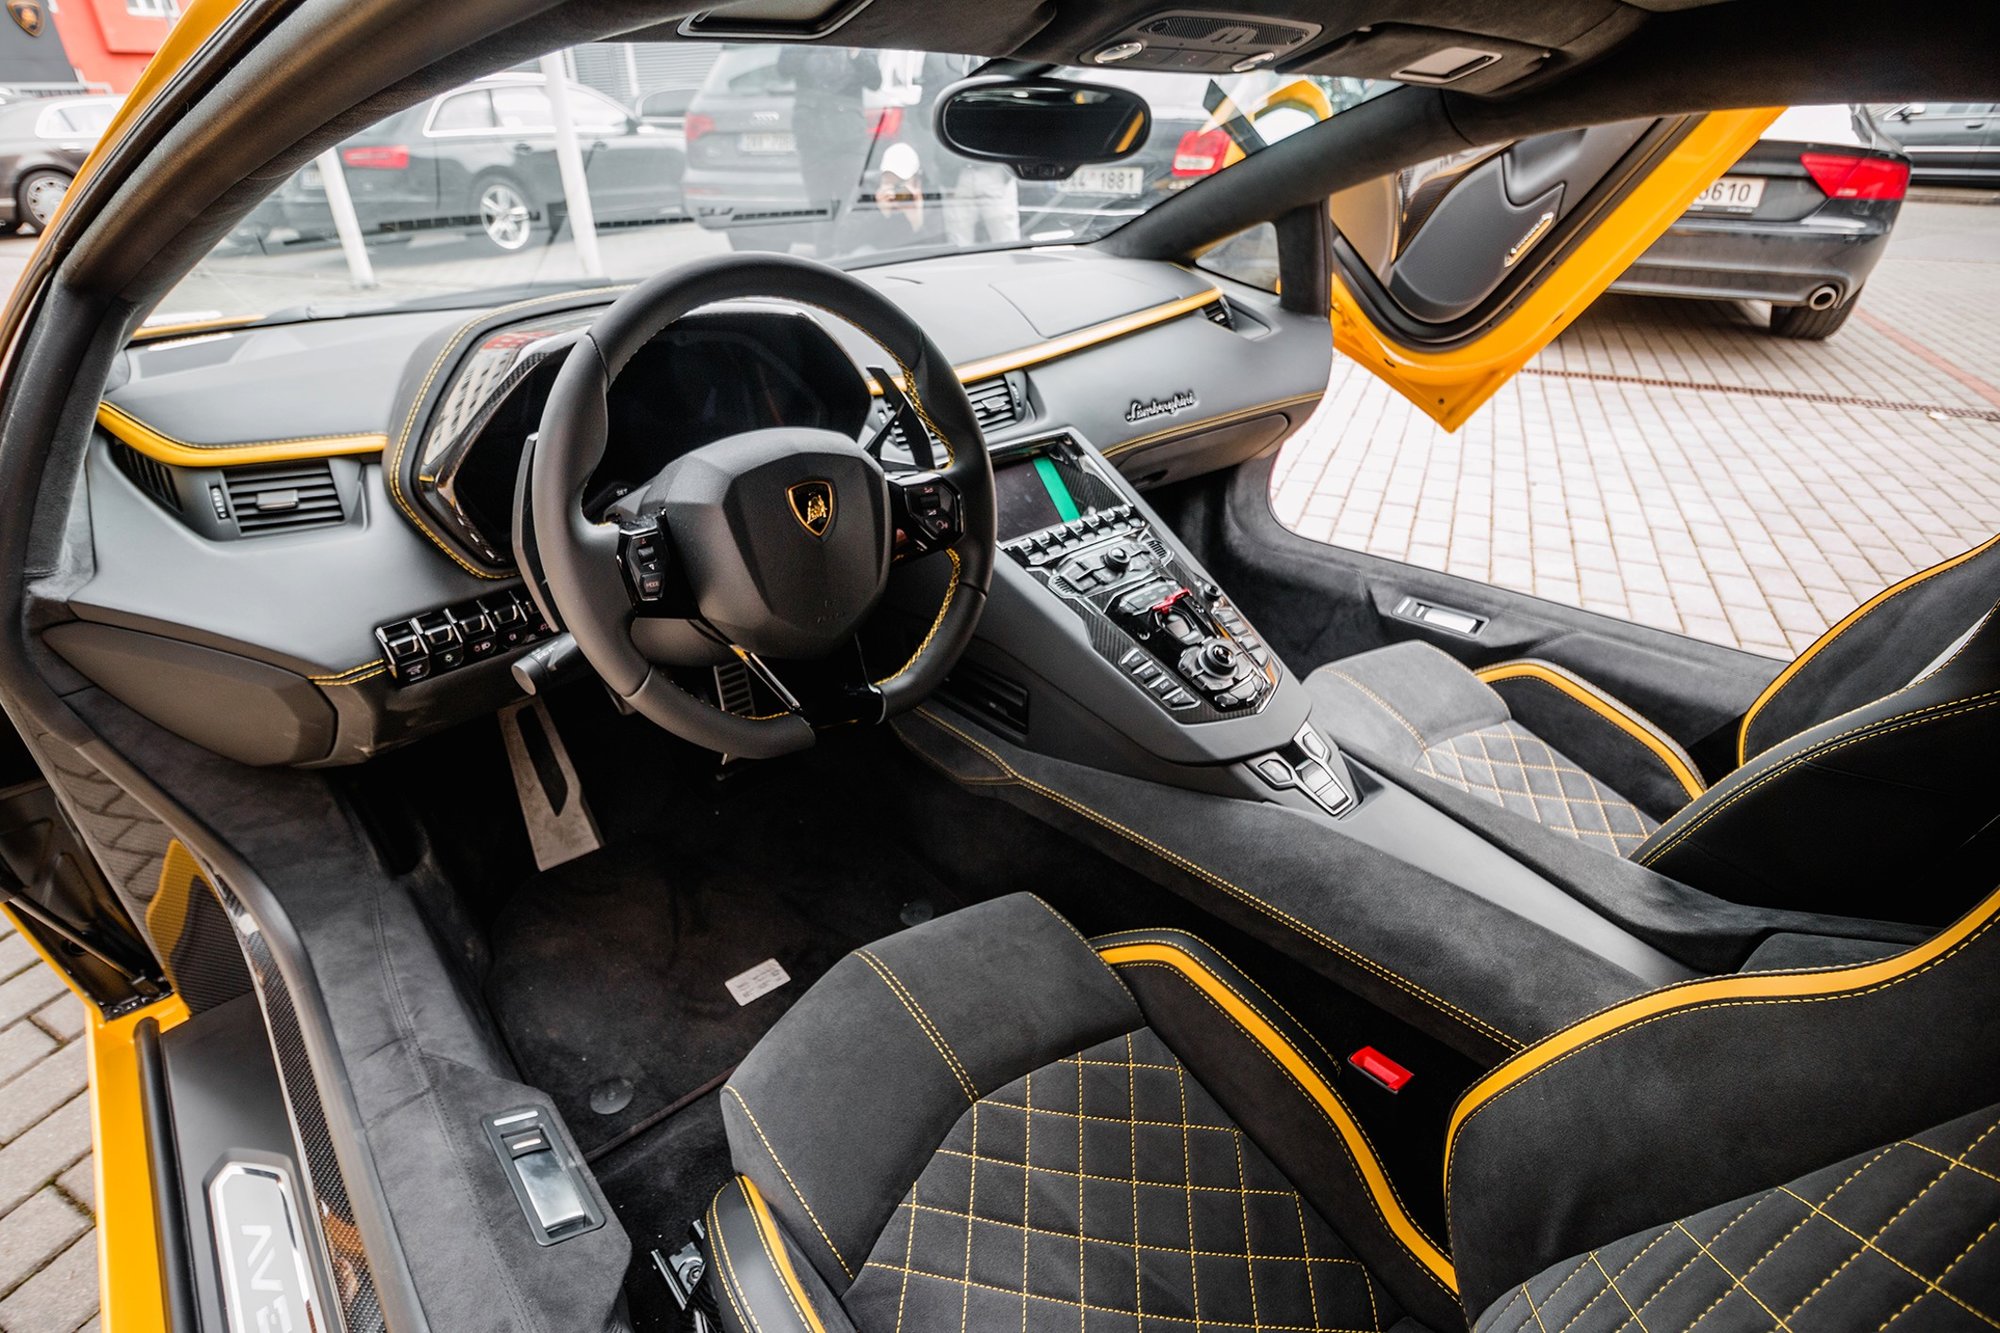 Lamborghini Aventador S má dvanáctiválec s výkonem 740 koní a točivým momentem 690 Nm, maximální rychlost je 350 km/h a cena představuje 7,6 milionu Kč bez daně